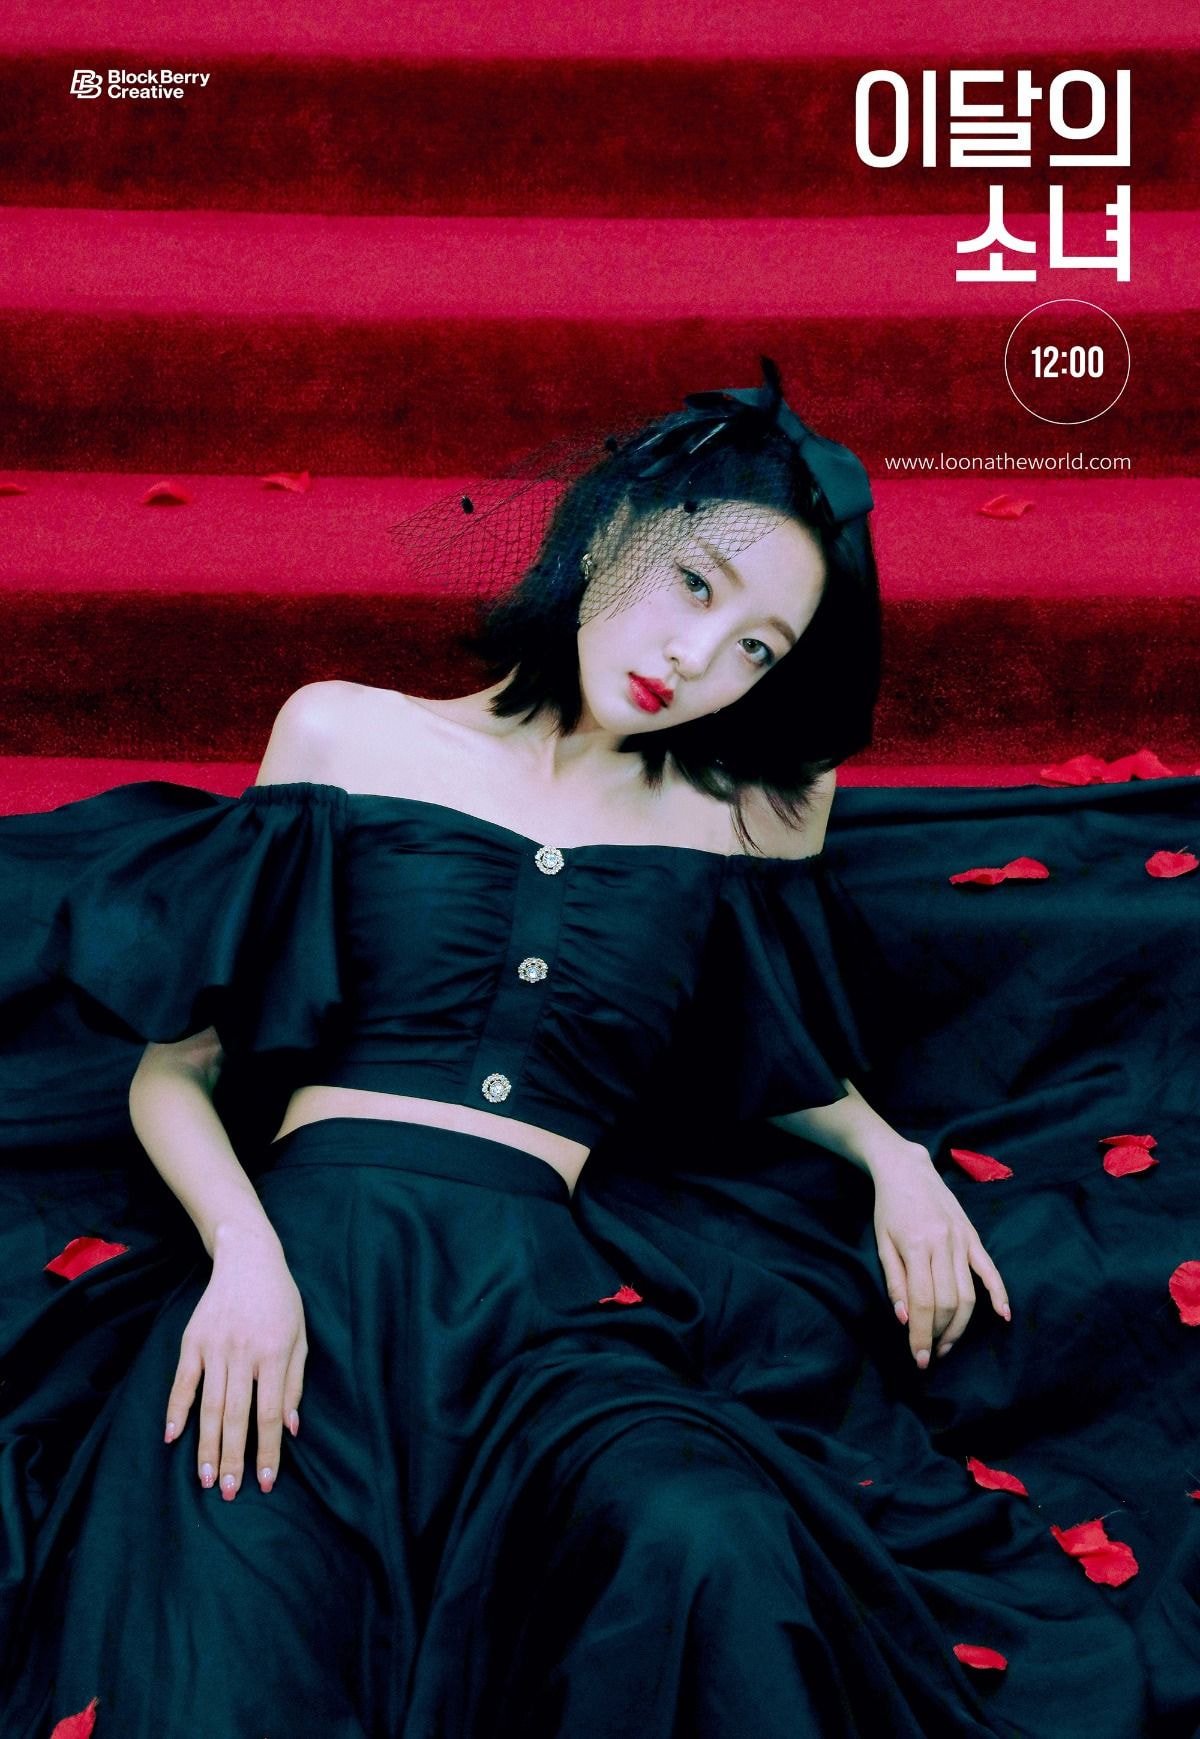 이달의 소녀 (LOONA) [12:00] 4th Concept Photo 이브, 최리, 진솔